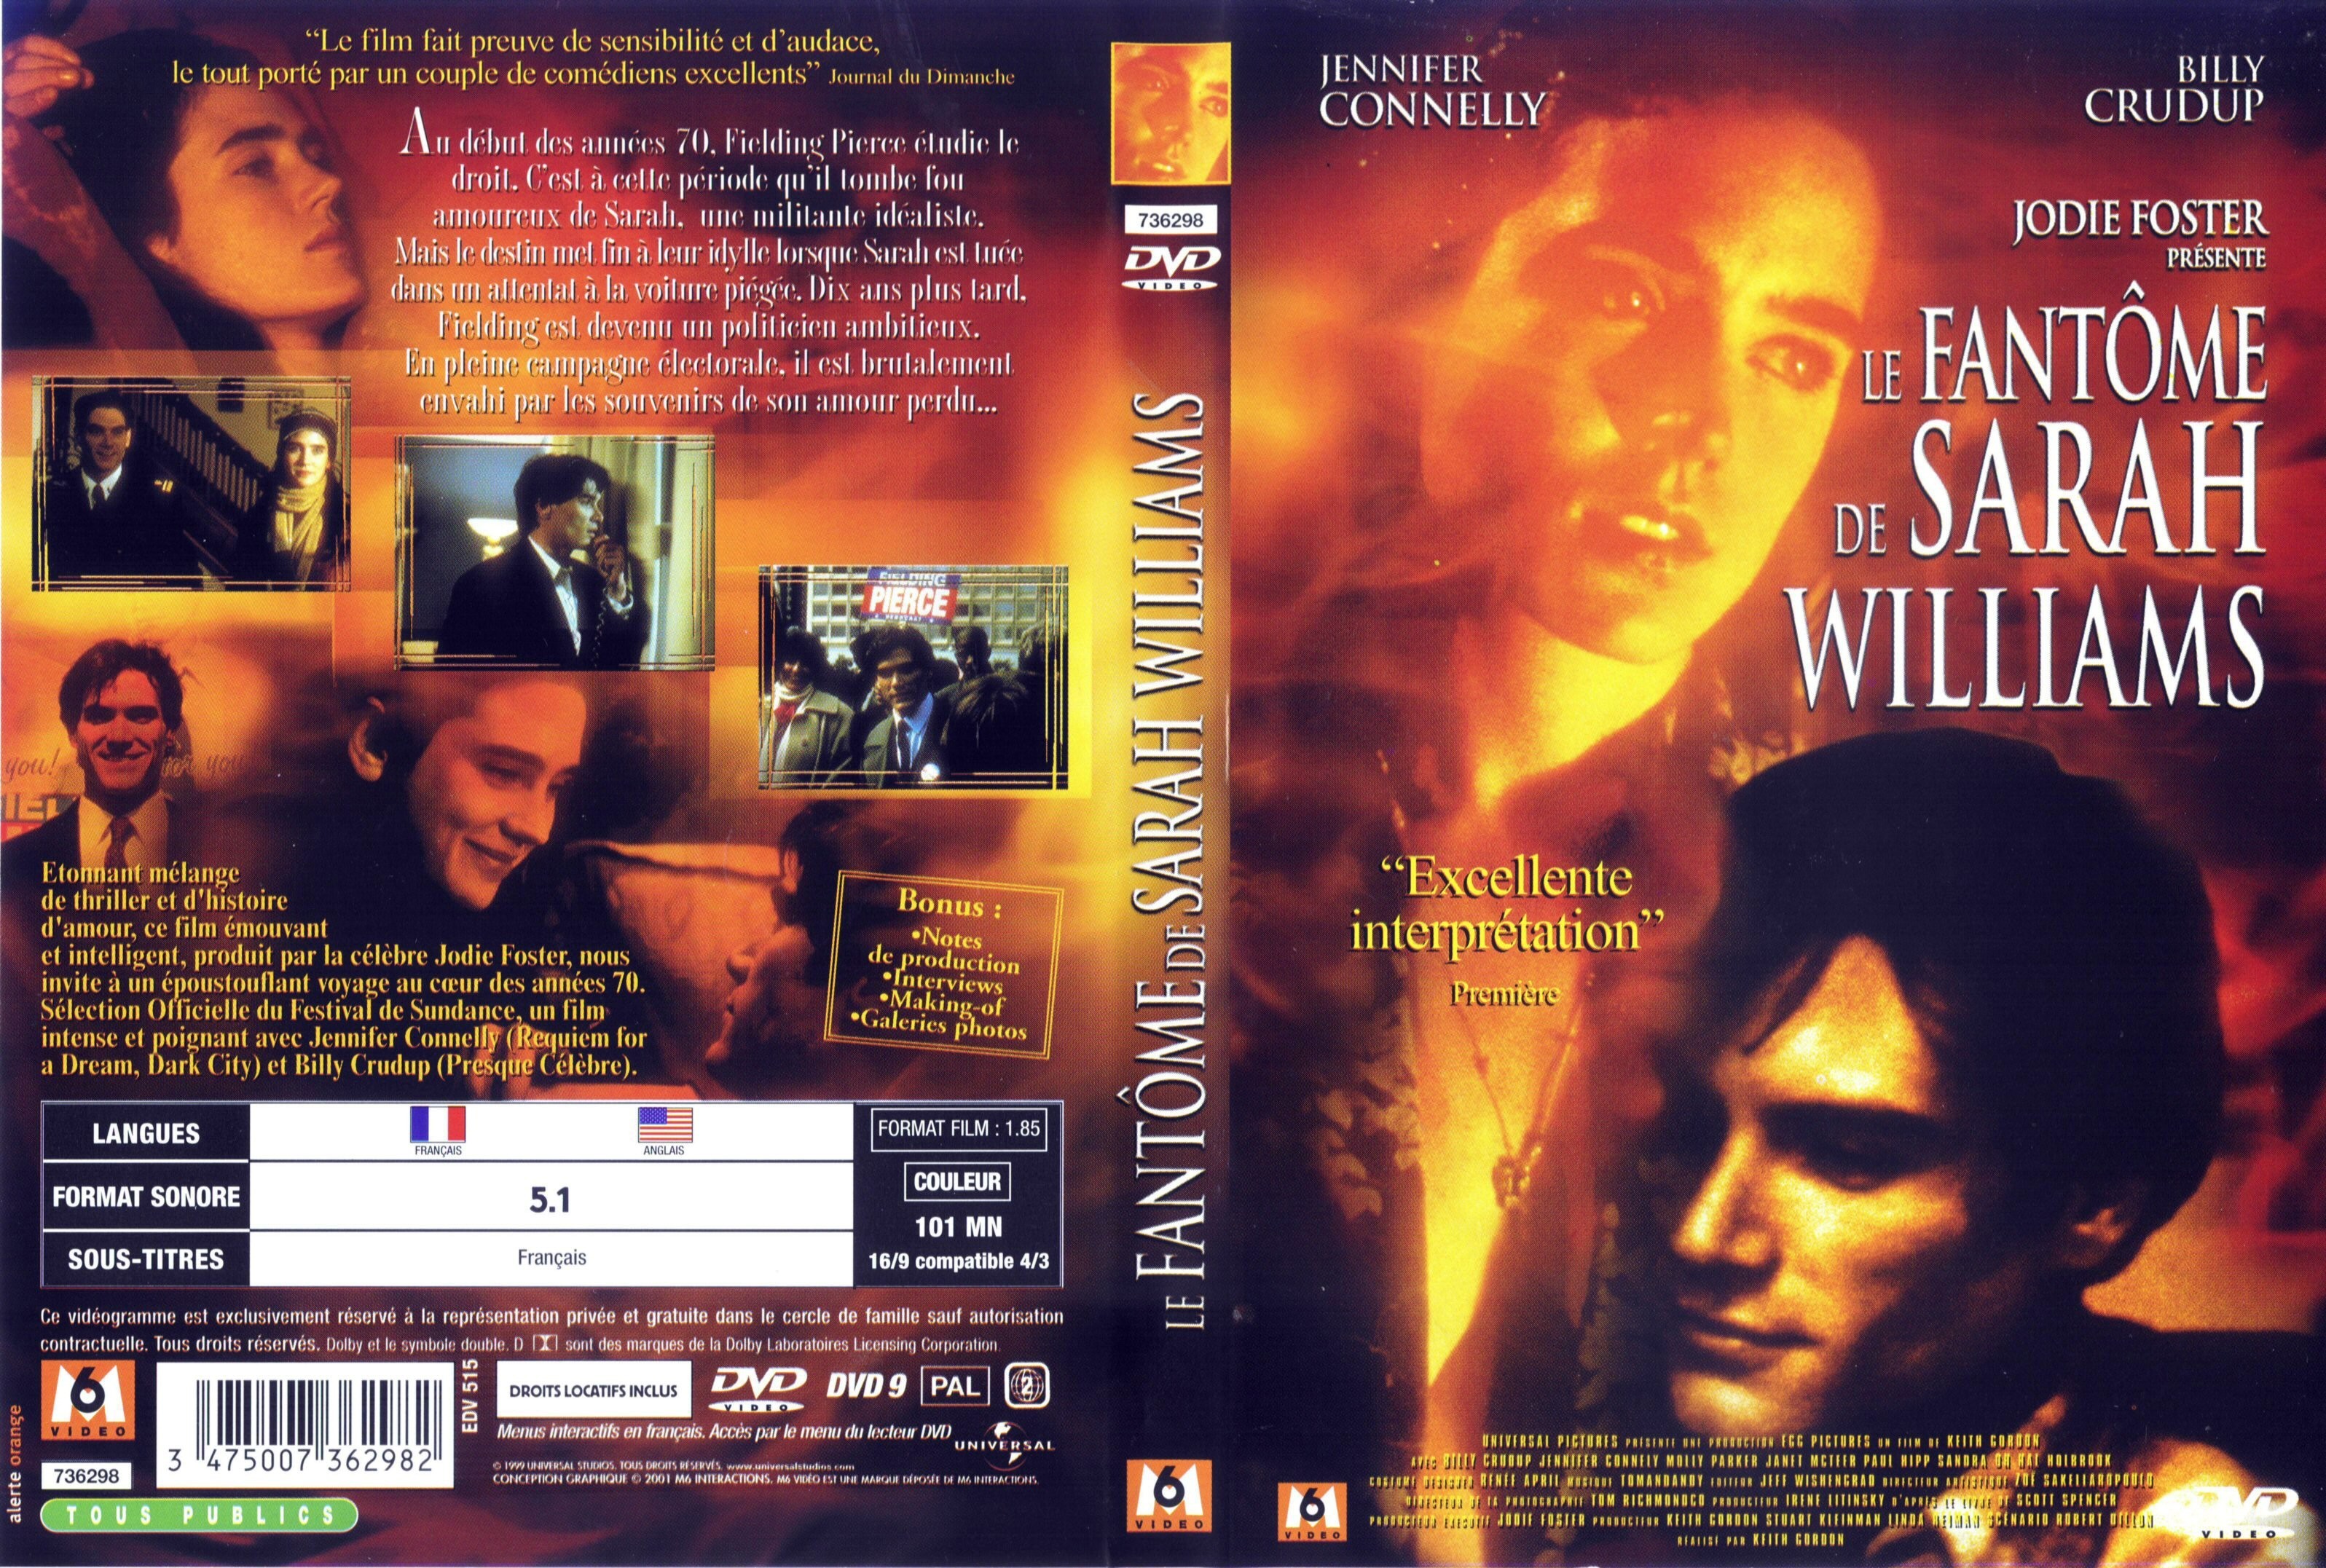 Jaquette DVD Le fantome de Sarah Williams